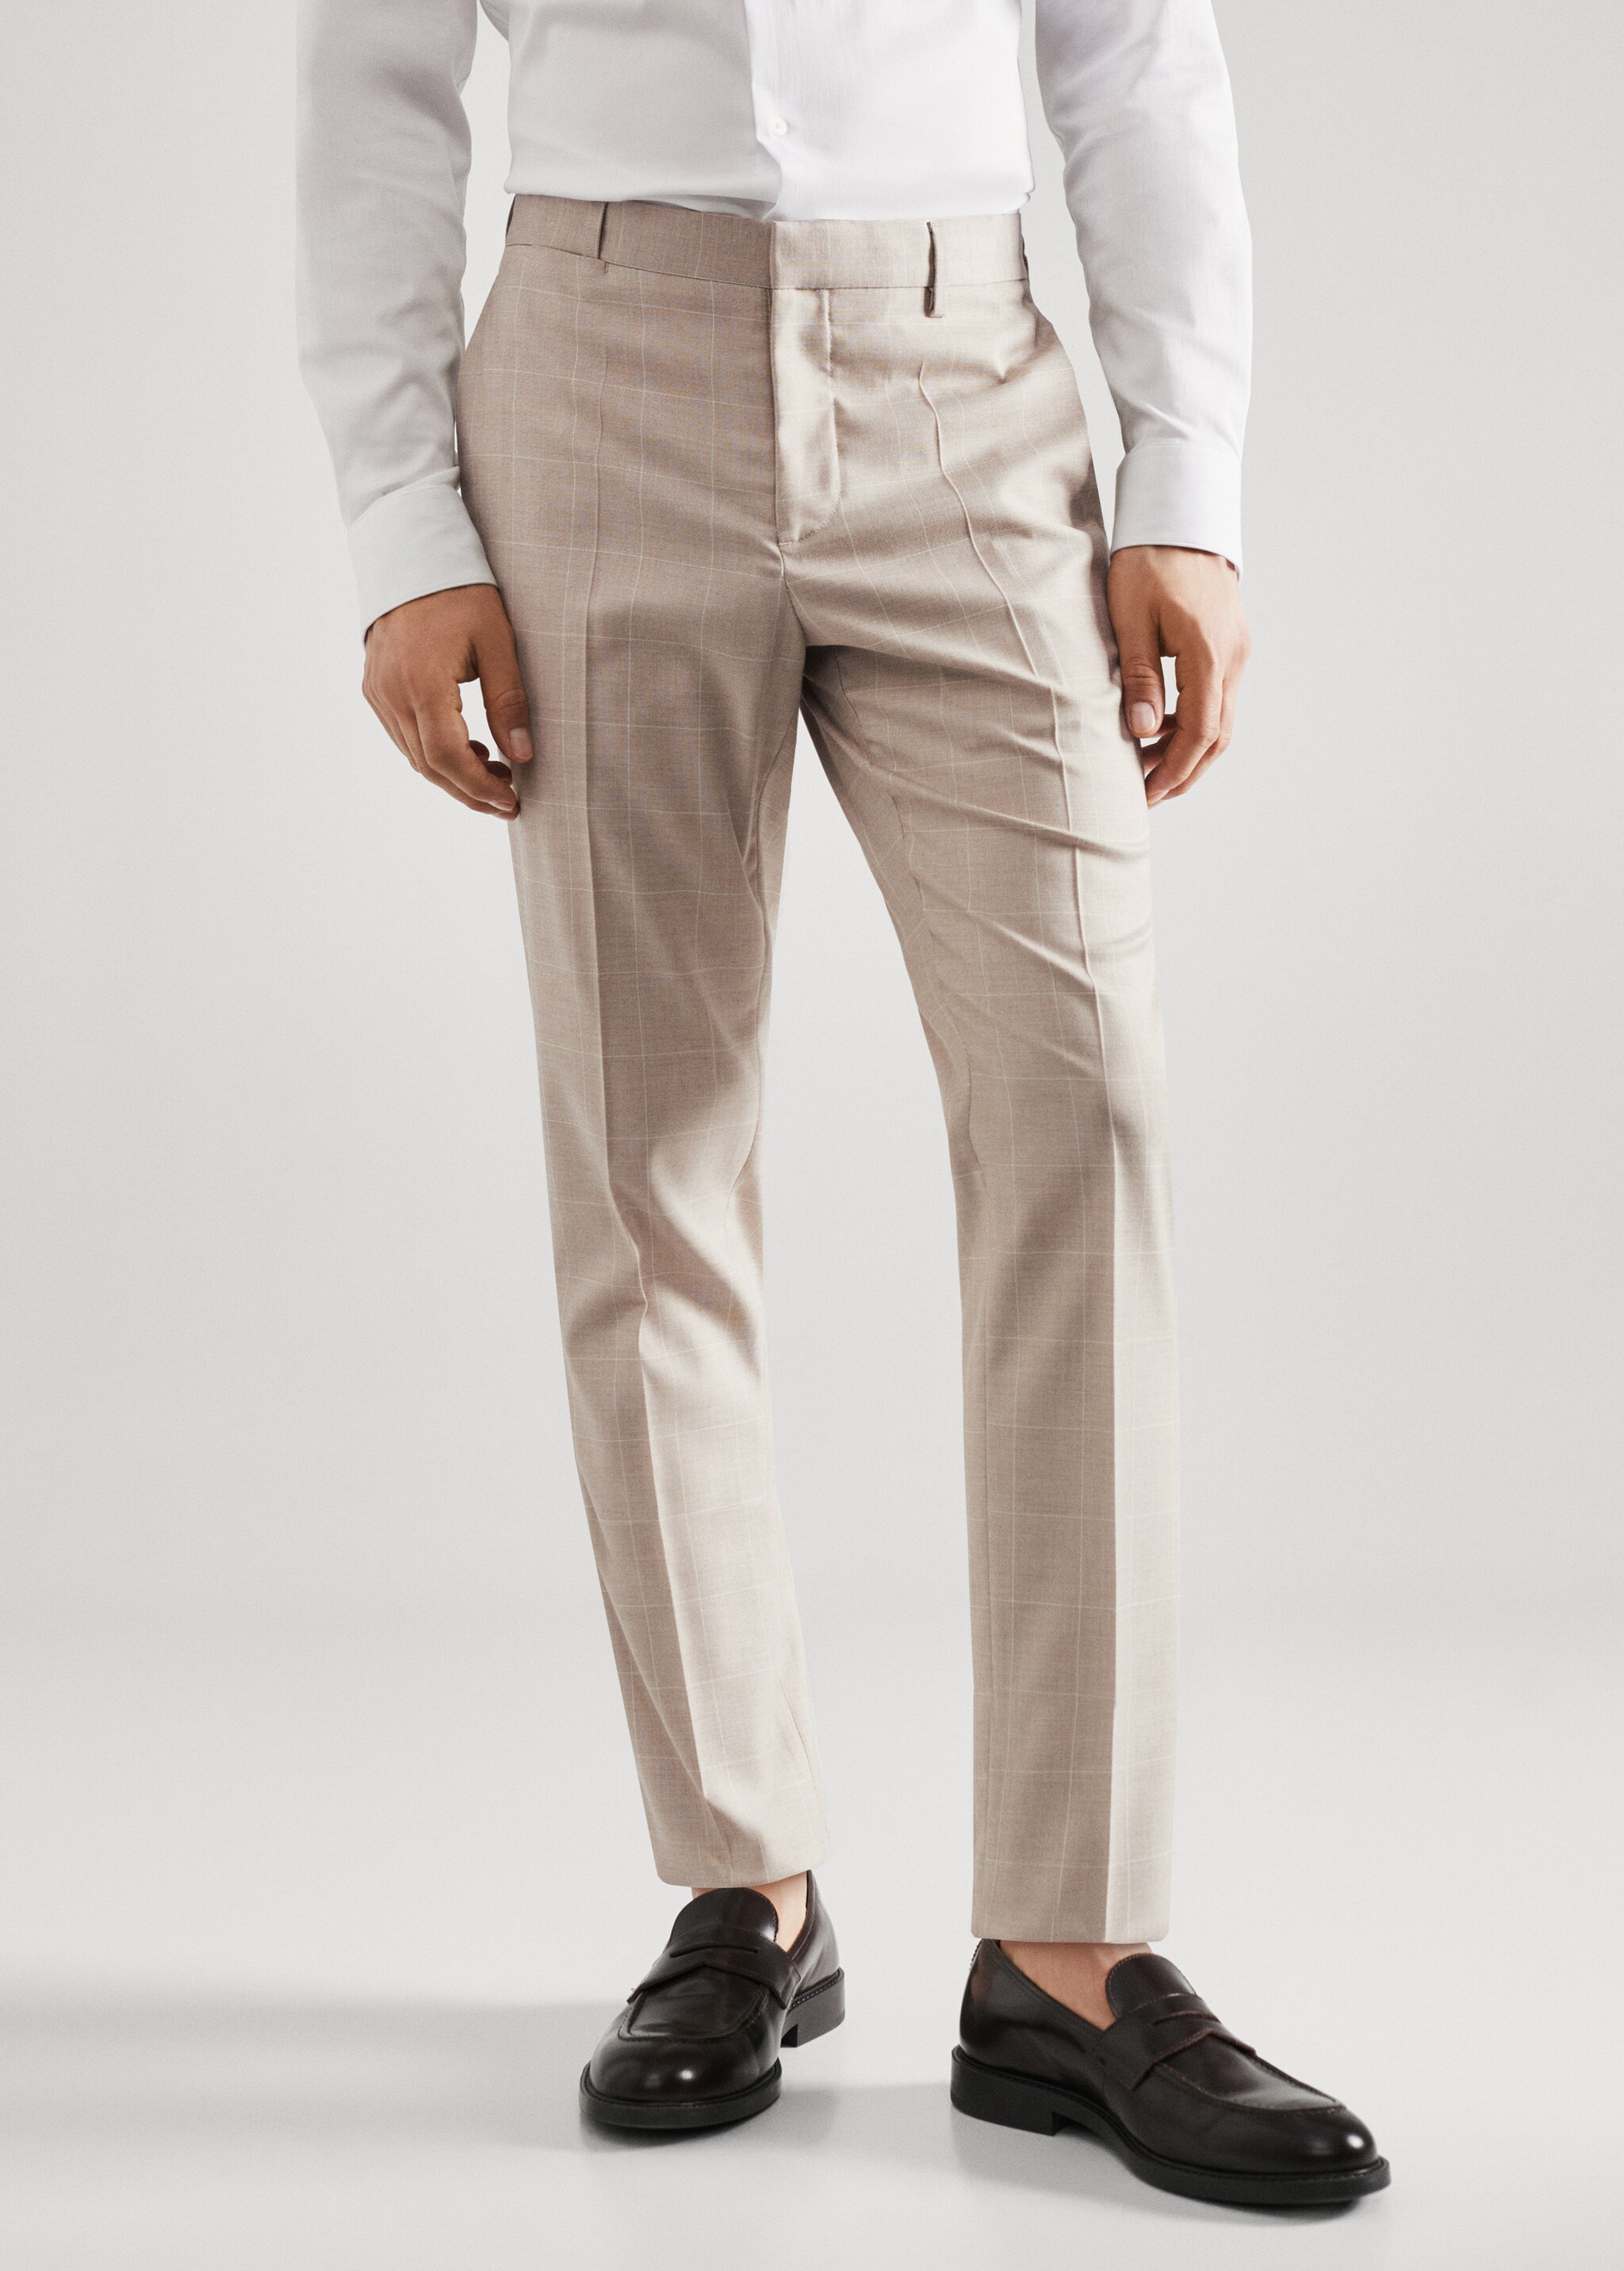 Spodnie garniturowe super slim fit w kratę - Plan średni